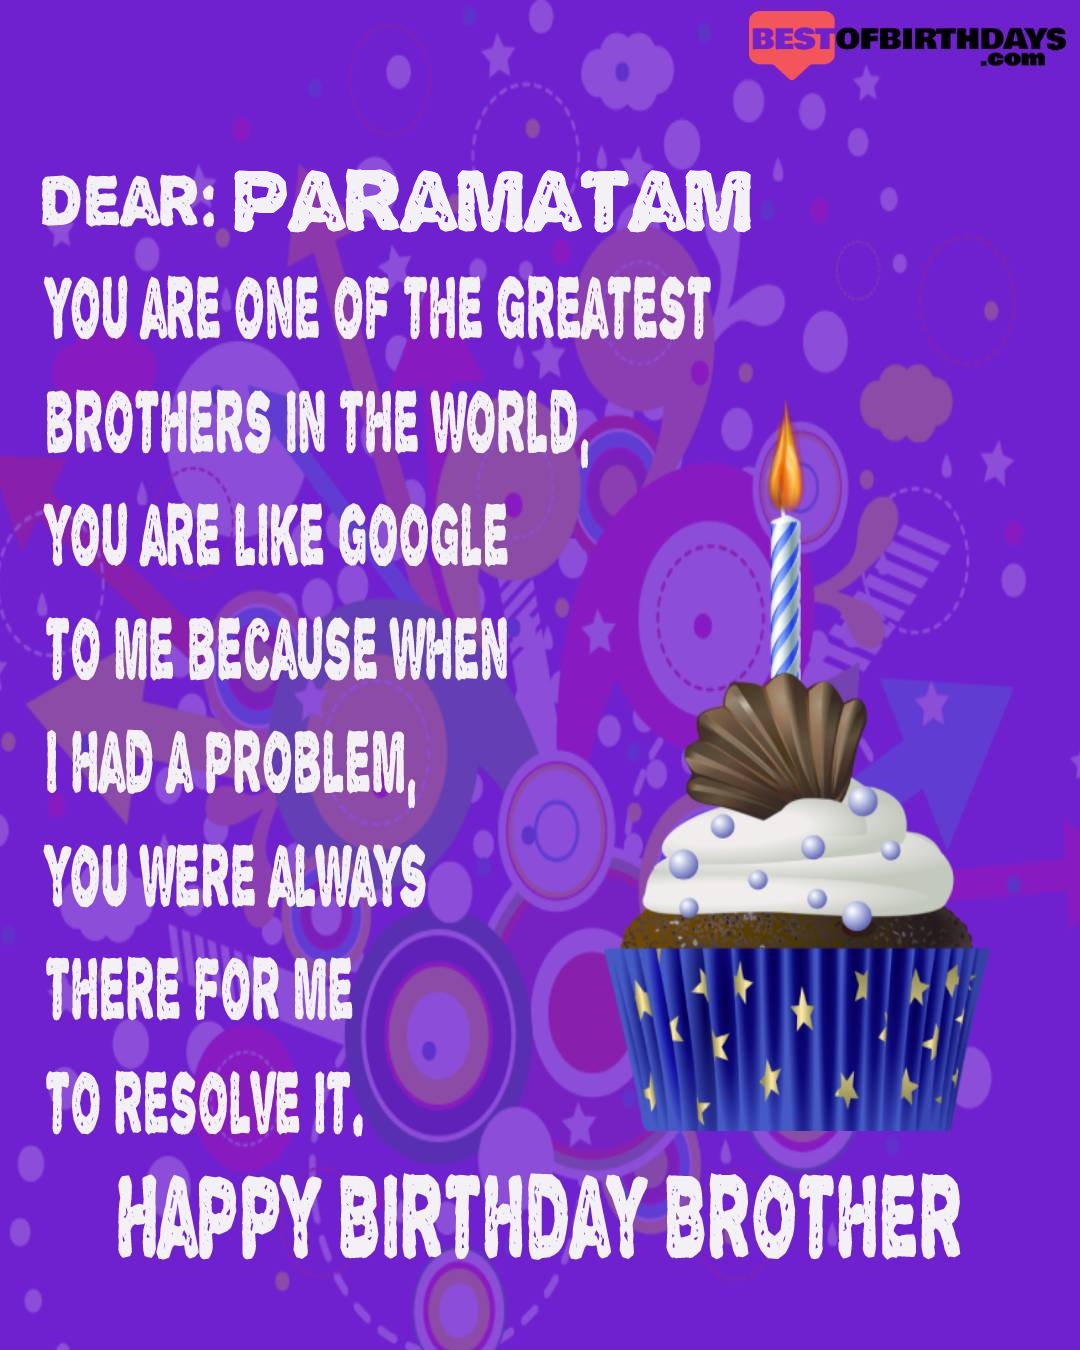 Happy birthday paramatam bhai brother bro